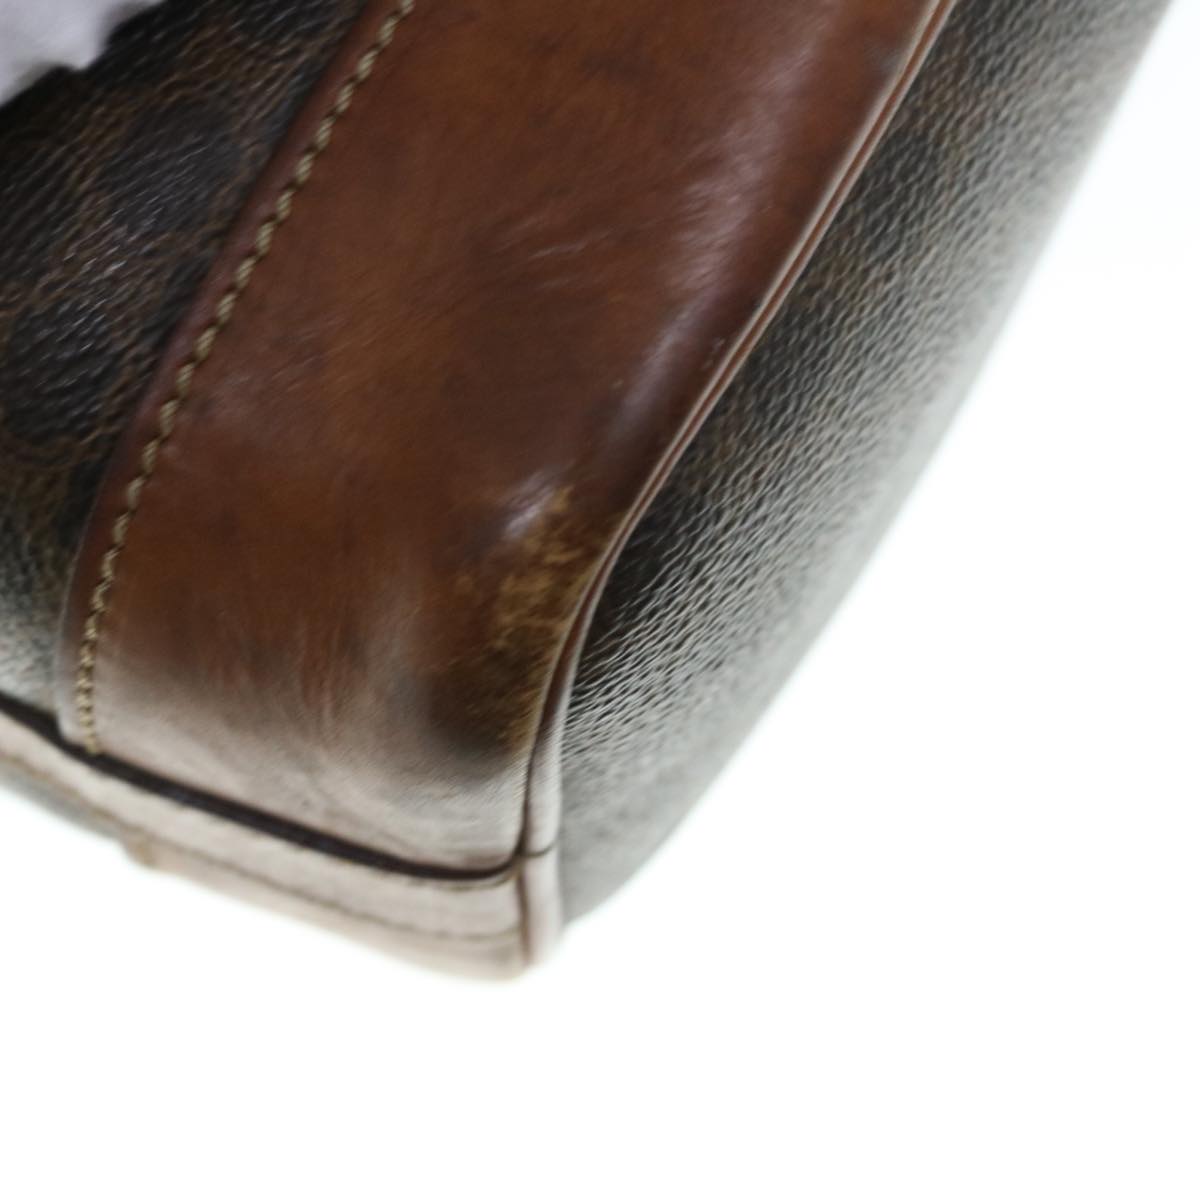 CELINE Macadam Canvas Shoulder Bag PVC Leather Brown Auth bs11386